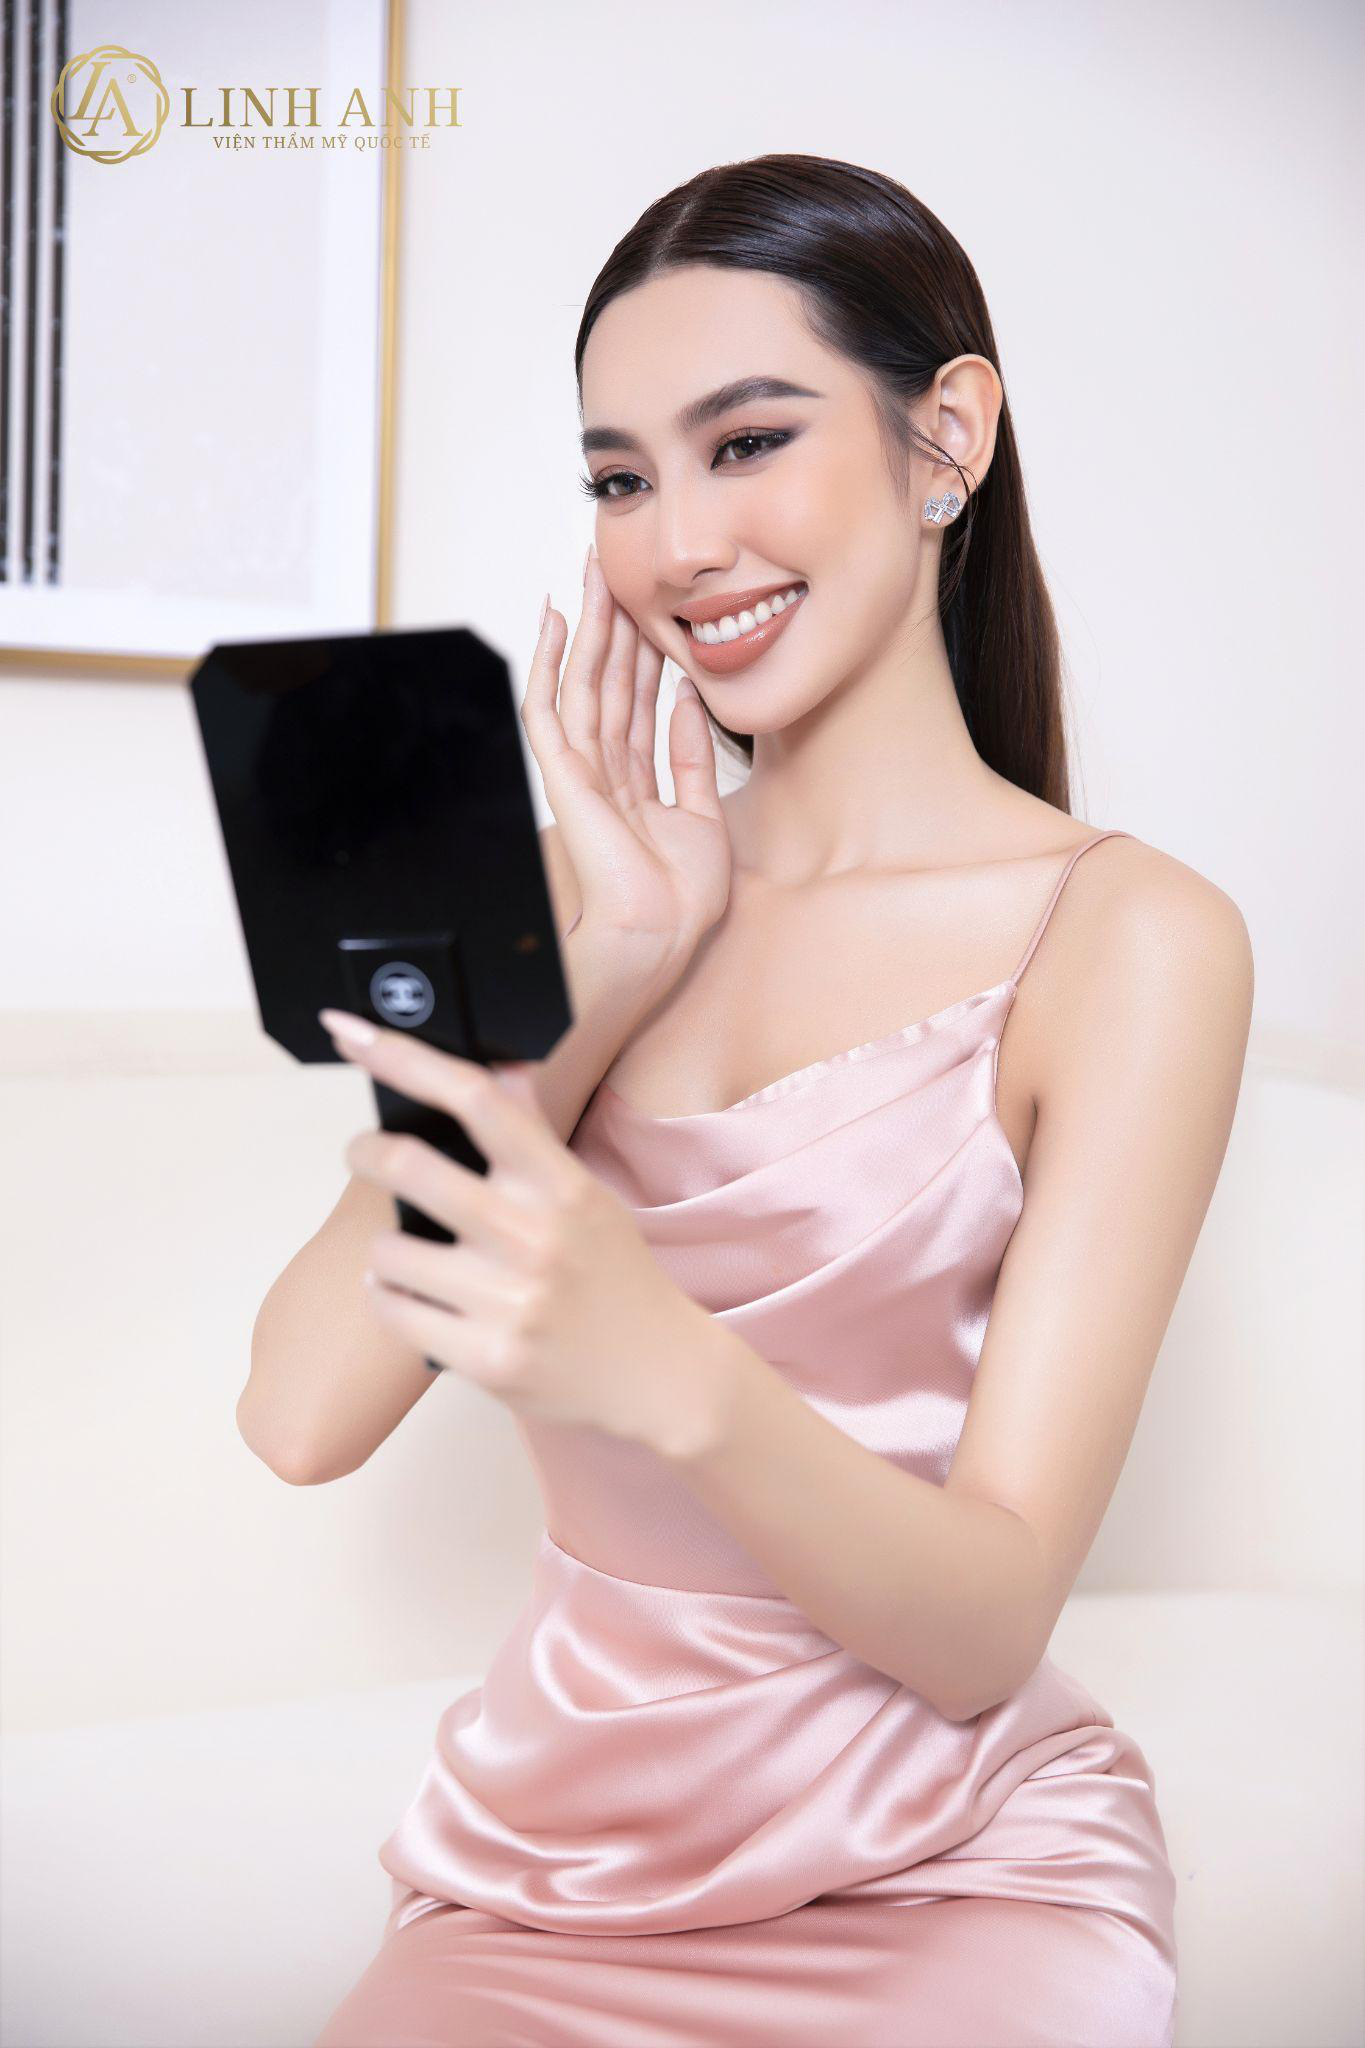 Bất ngờ trước lý do khiến Hoa hậu Thùy Tiên chọn Thẩm Mỹ Quốc Tế Linh Anh làm đại sứ thương hiệu - Ảnh 5.